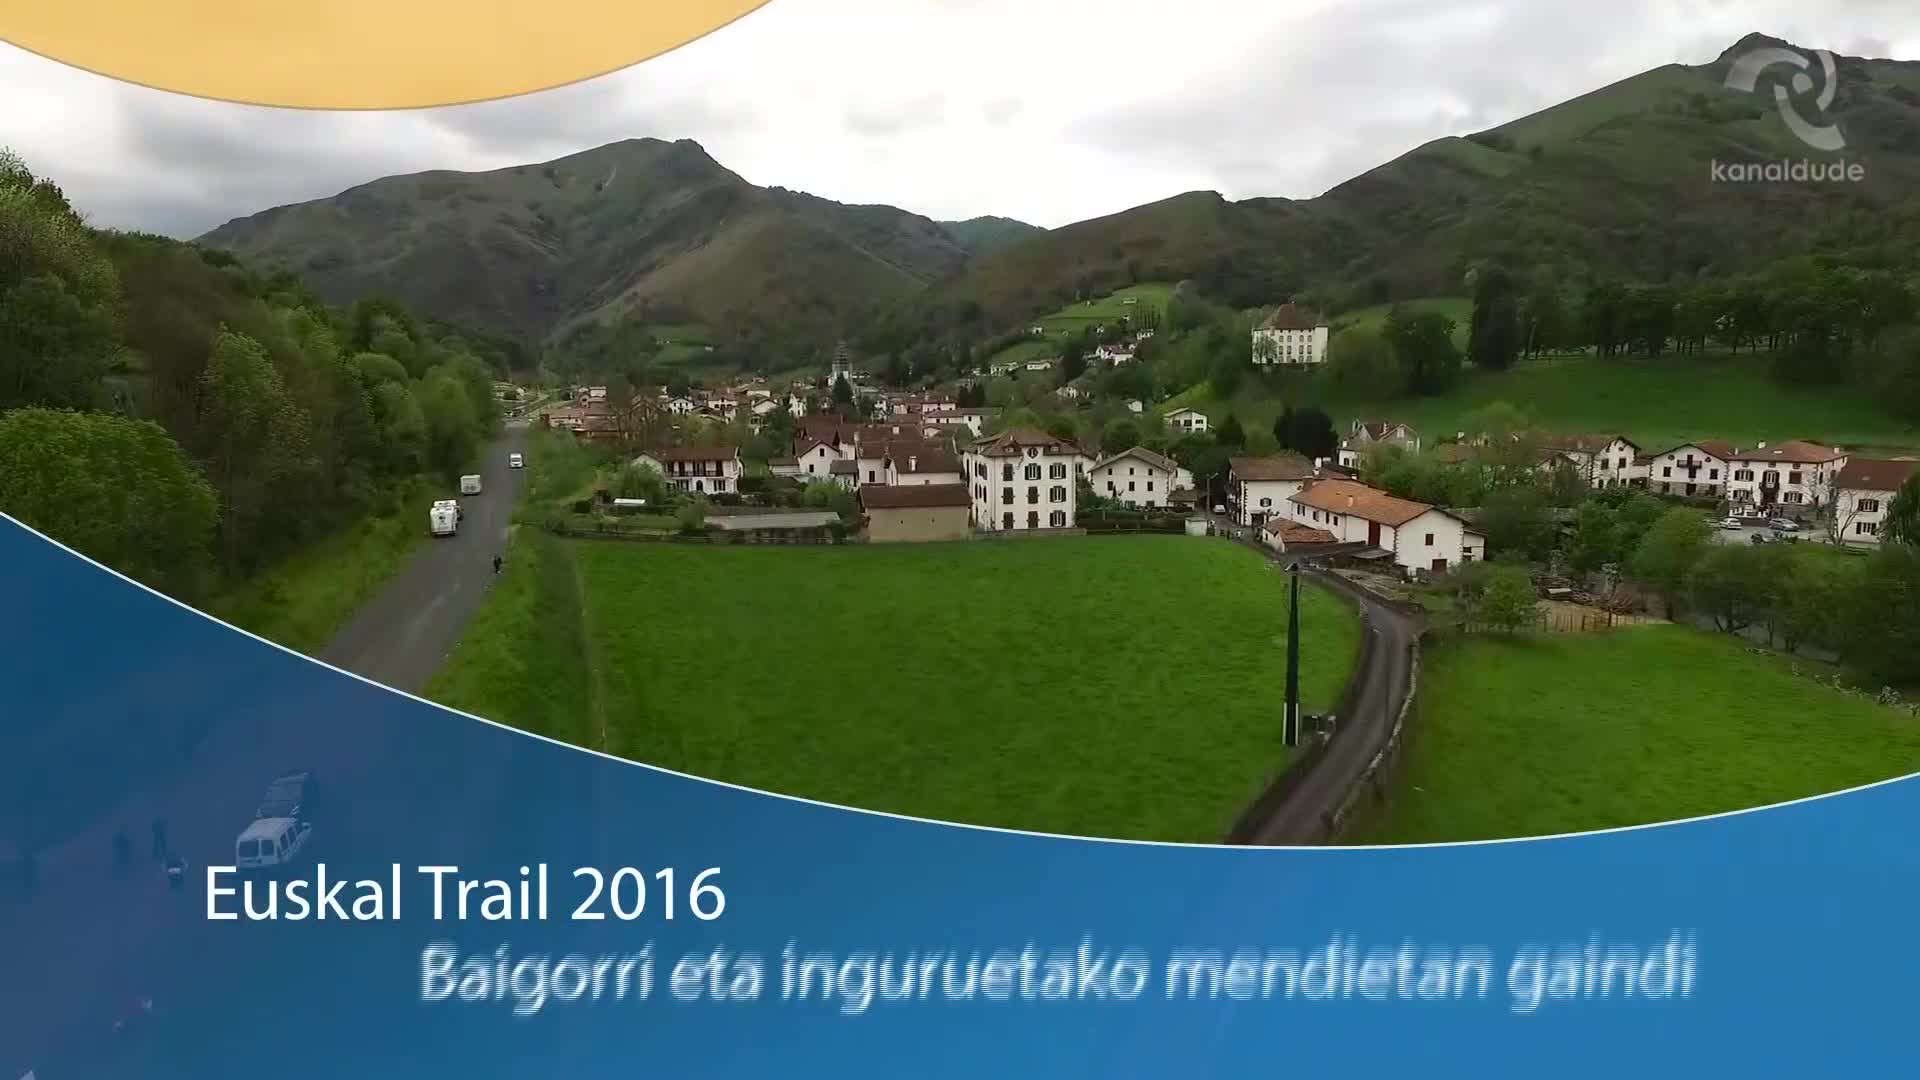 Euskal Trail 2016: Baigorri eta inguruetako mendietan gaindi